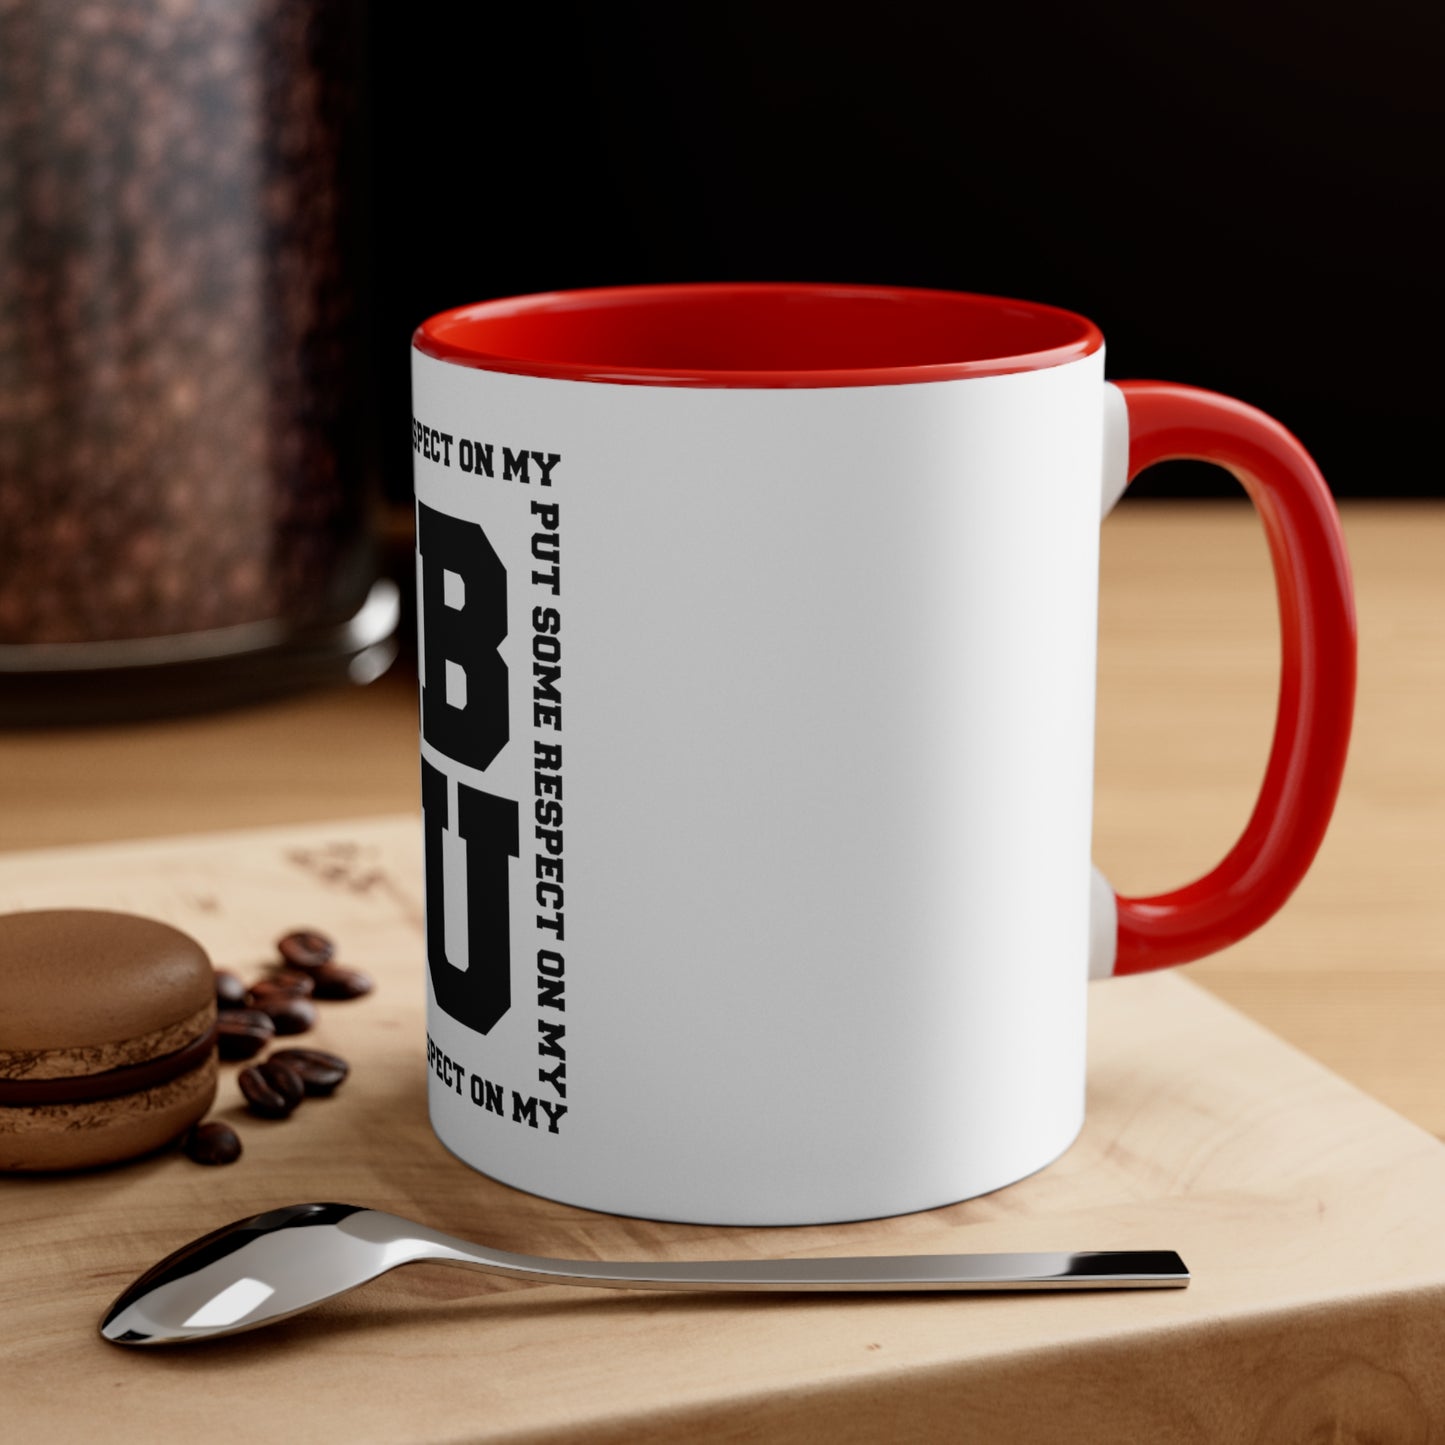 HBCU Coffee Mug, 11oz vs 2